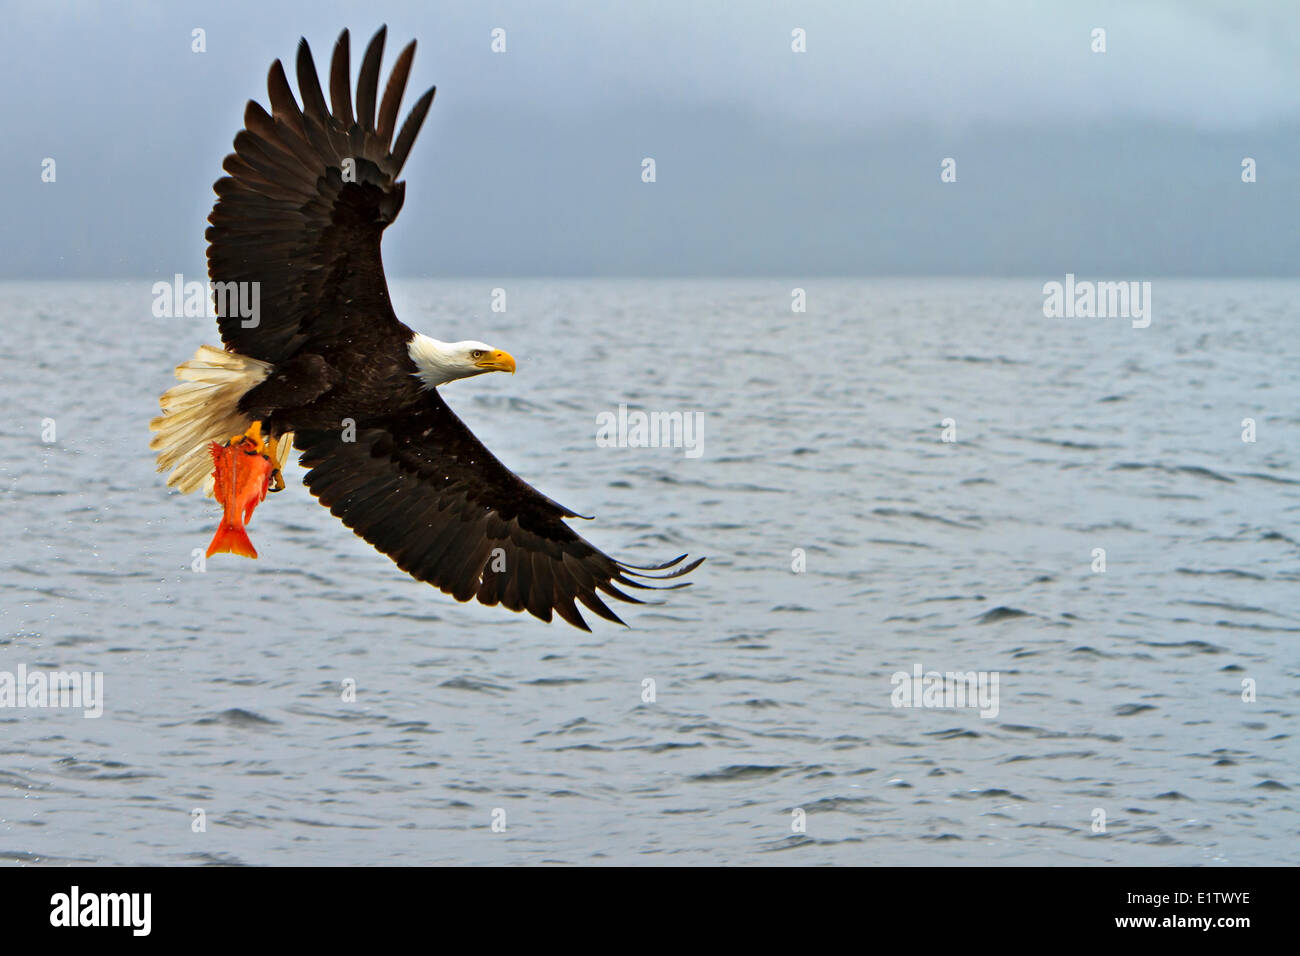 Adler im Flug mit einem frisch gefangenen Schnapper in seinen mächtigen Krallen Pazifik vor der British Columbia coast Kanada. Stockfoto